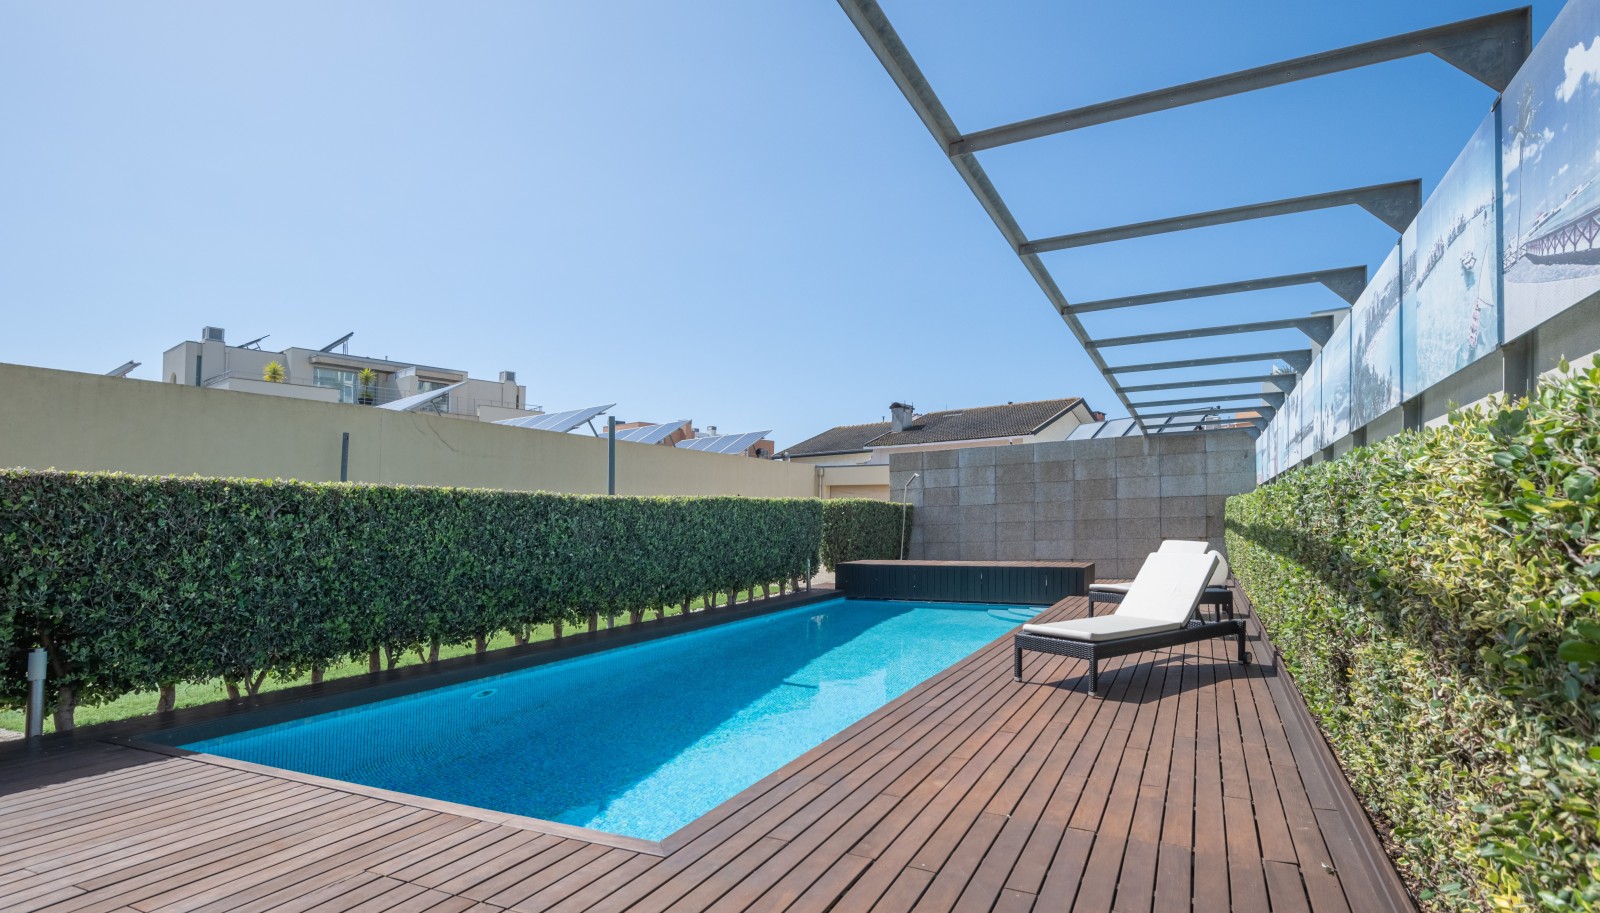 Villa mit Pool und Garten, zu verkaufen, in Miramar, V. N. Gaia, Portugal_235373